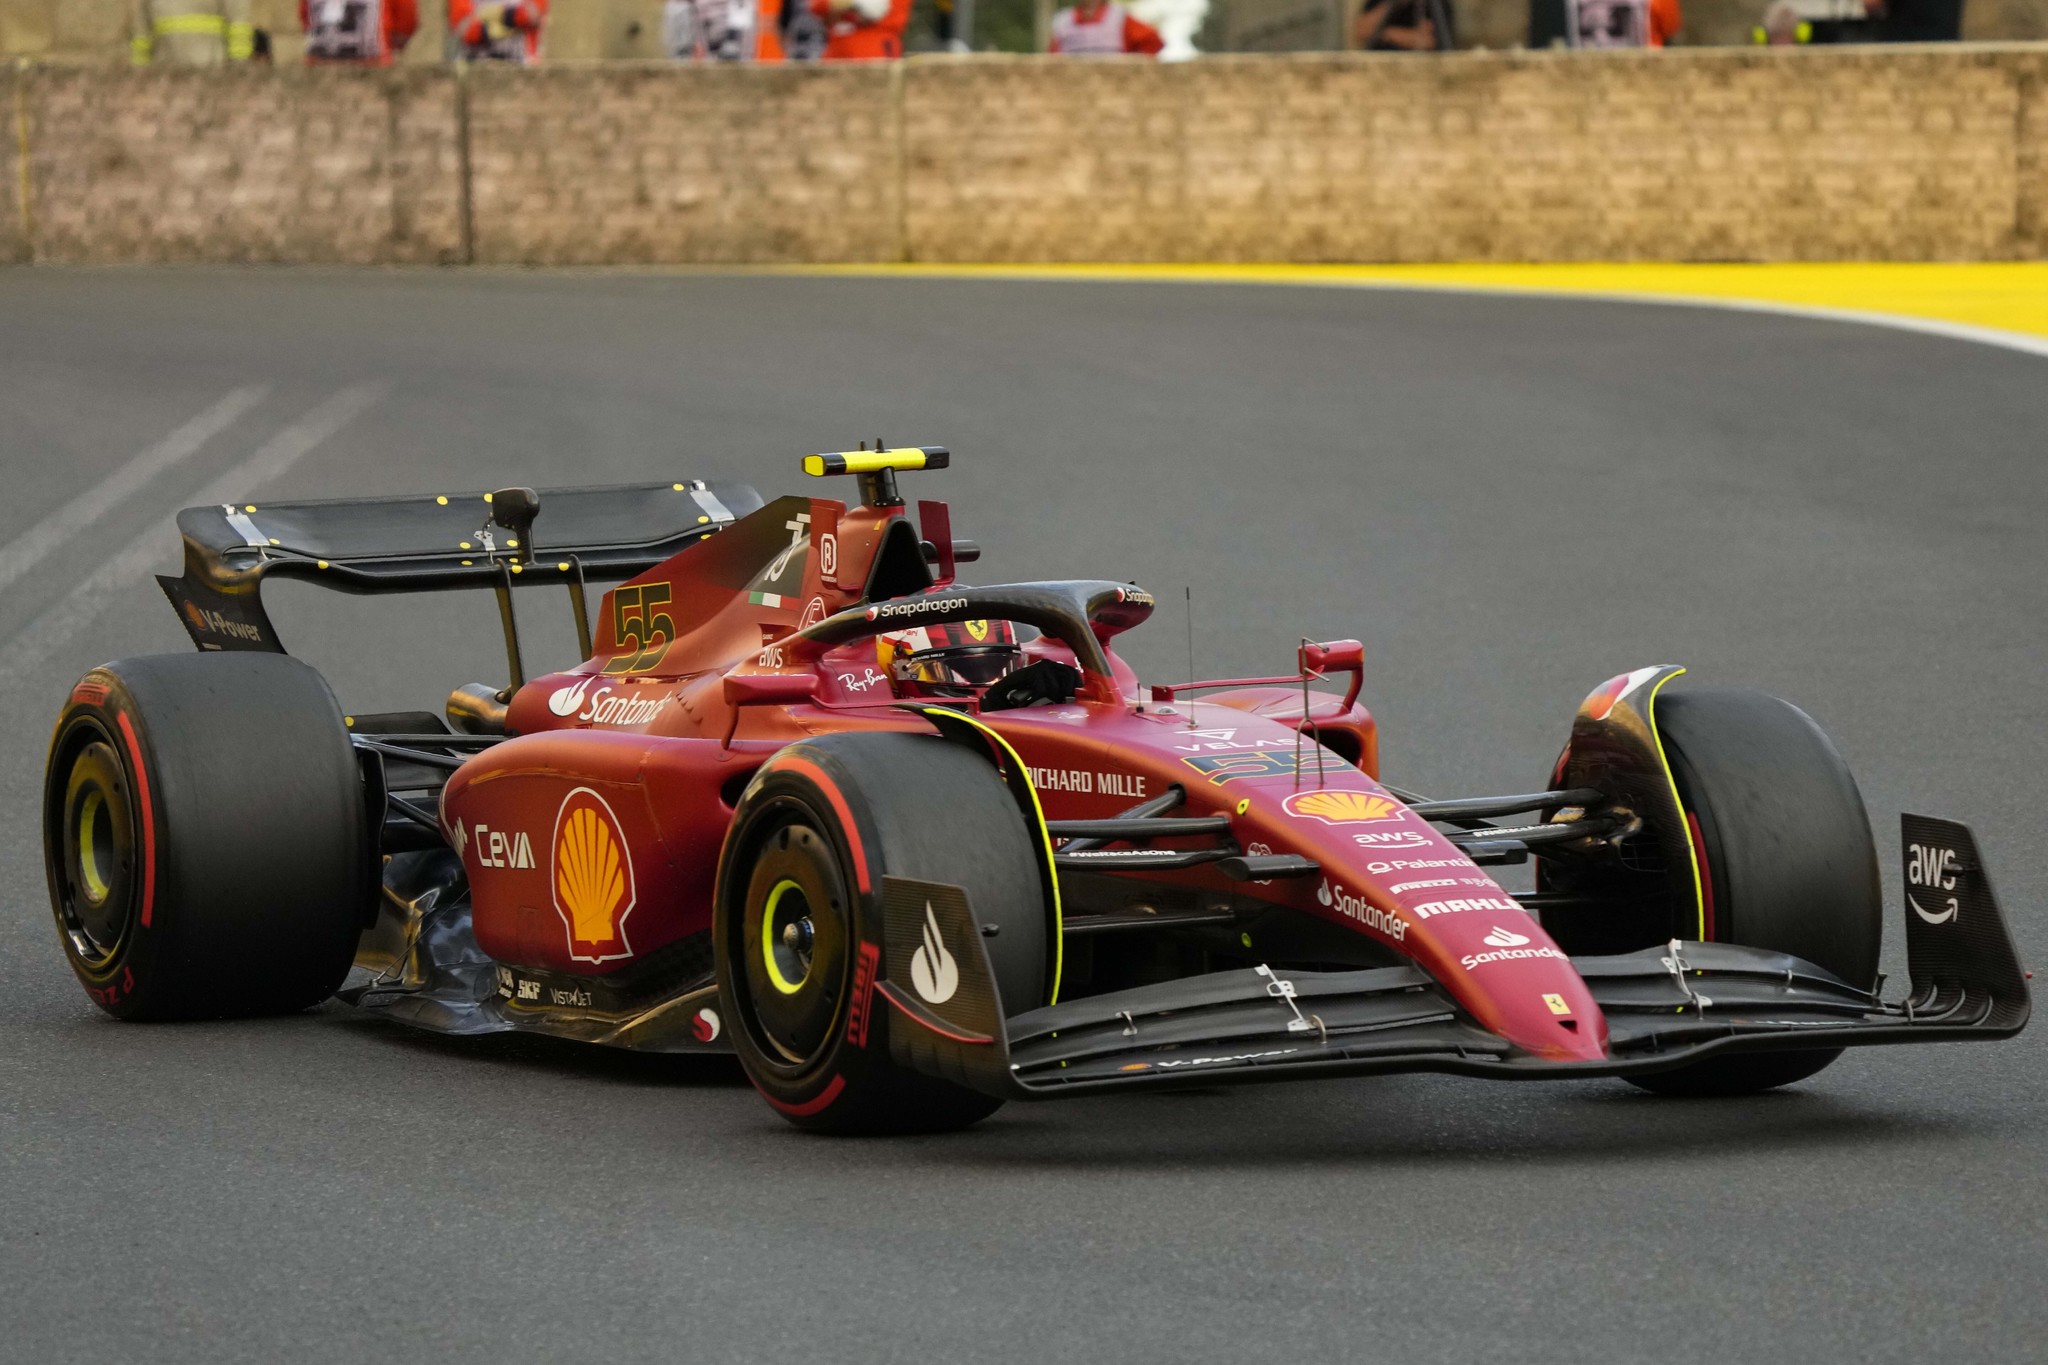 El piloto de Ferrari Carlos Sainz durante la sesión de calificación en el circuito. (Foto AP/Sergei Grits)